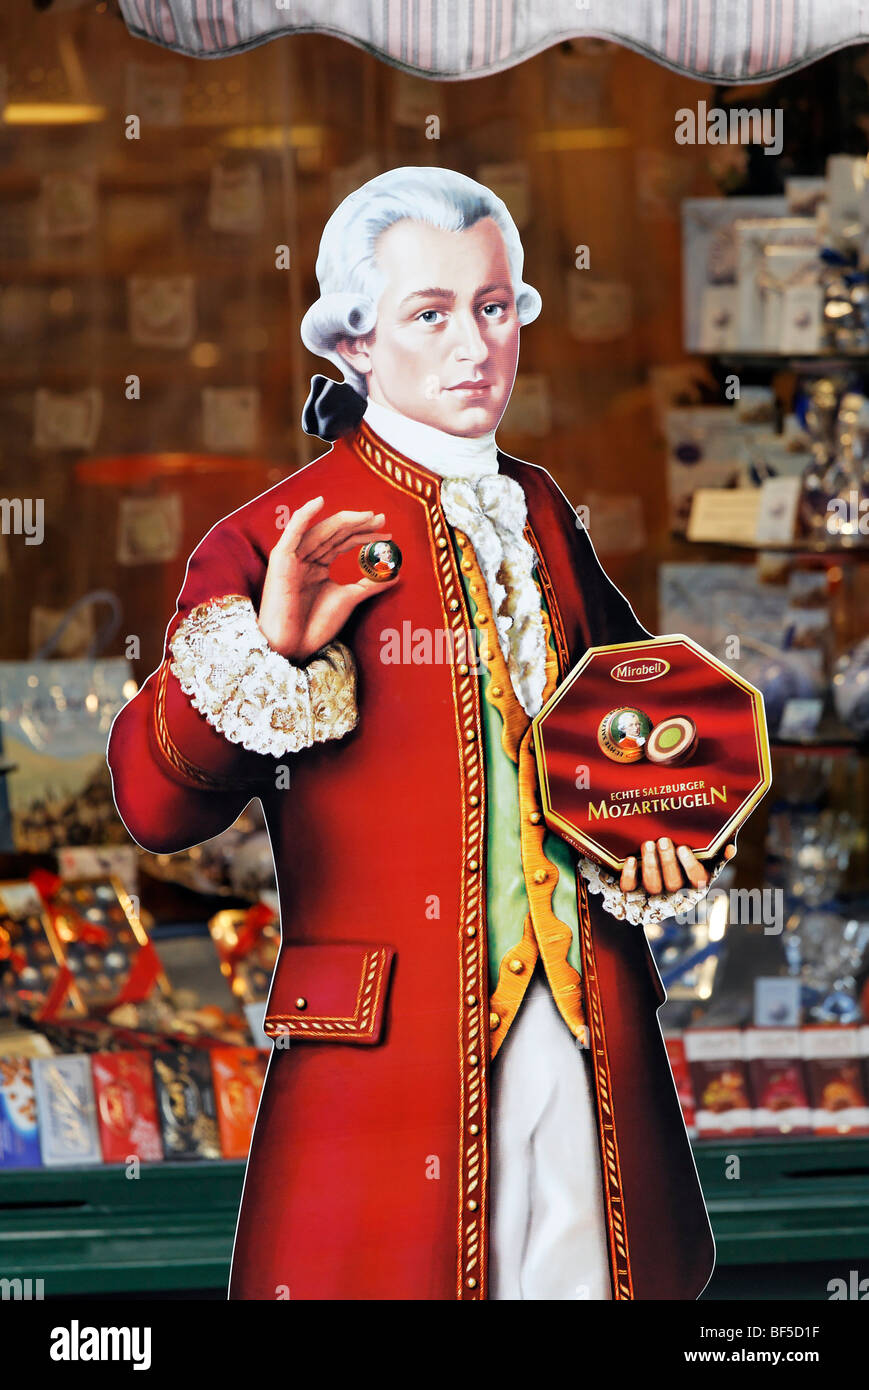 Mozart-Karton ausgeschnittenen vor einem Candy Shop, echte Mozartkugeln Reber Pralinen, Alter Markt Platz, Salzburg, Österreich, Stockfoto